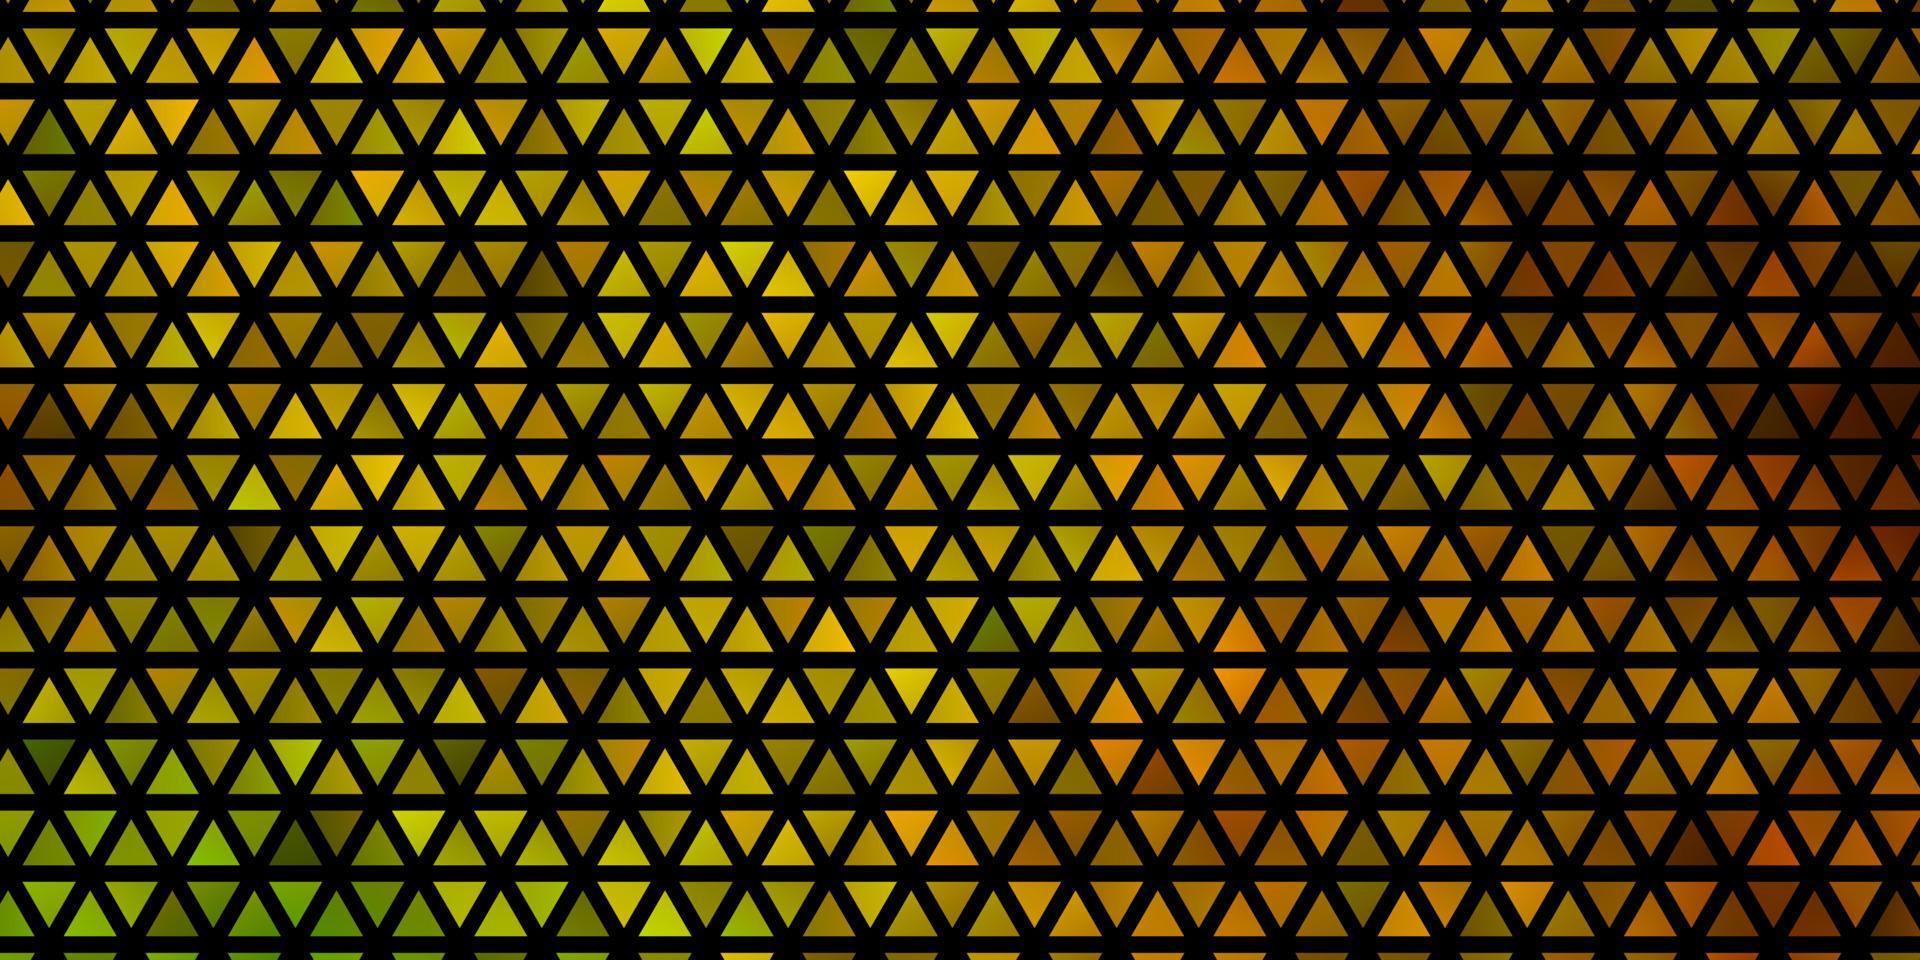 fond de vecteur vert foncé, jaune avec un style polygonal.